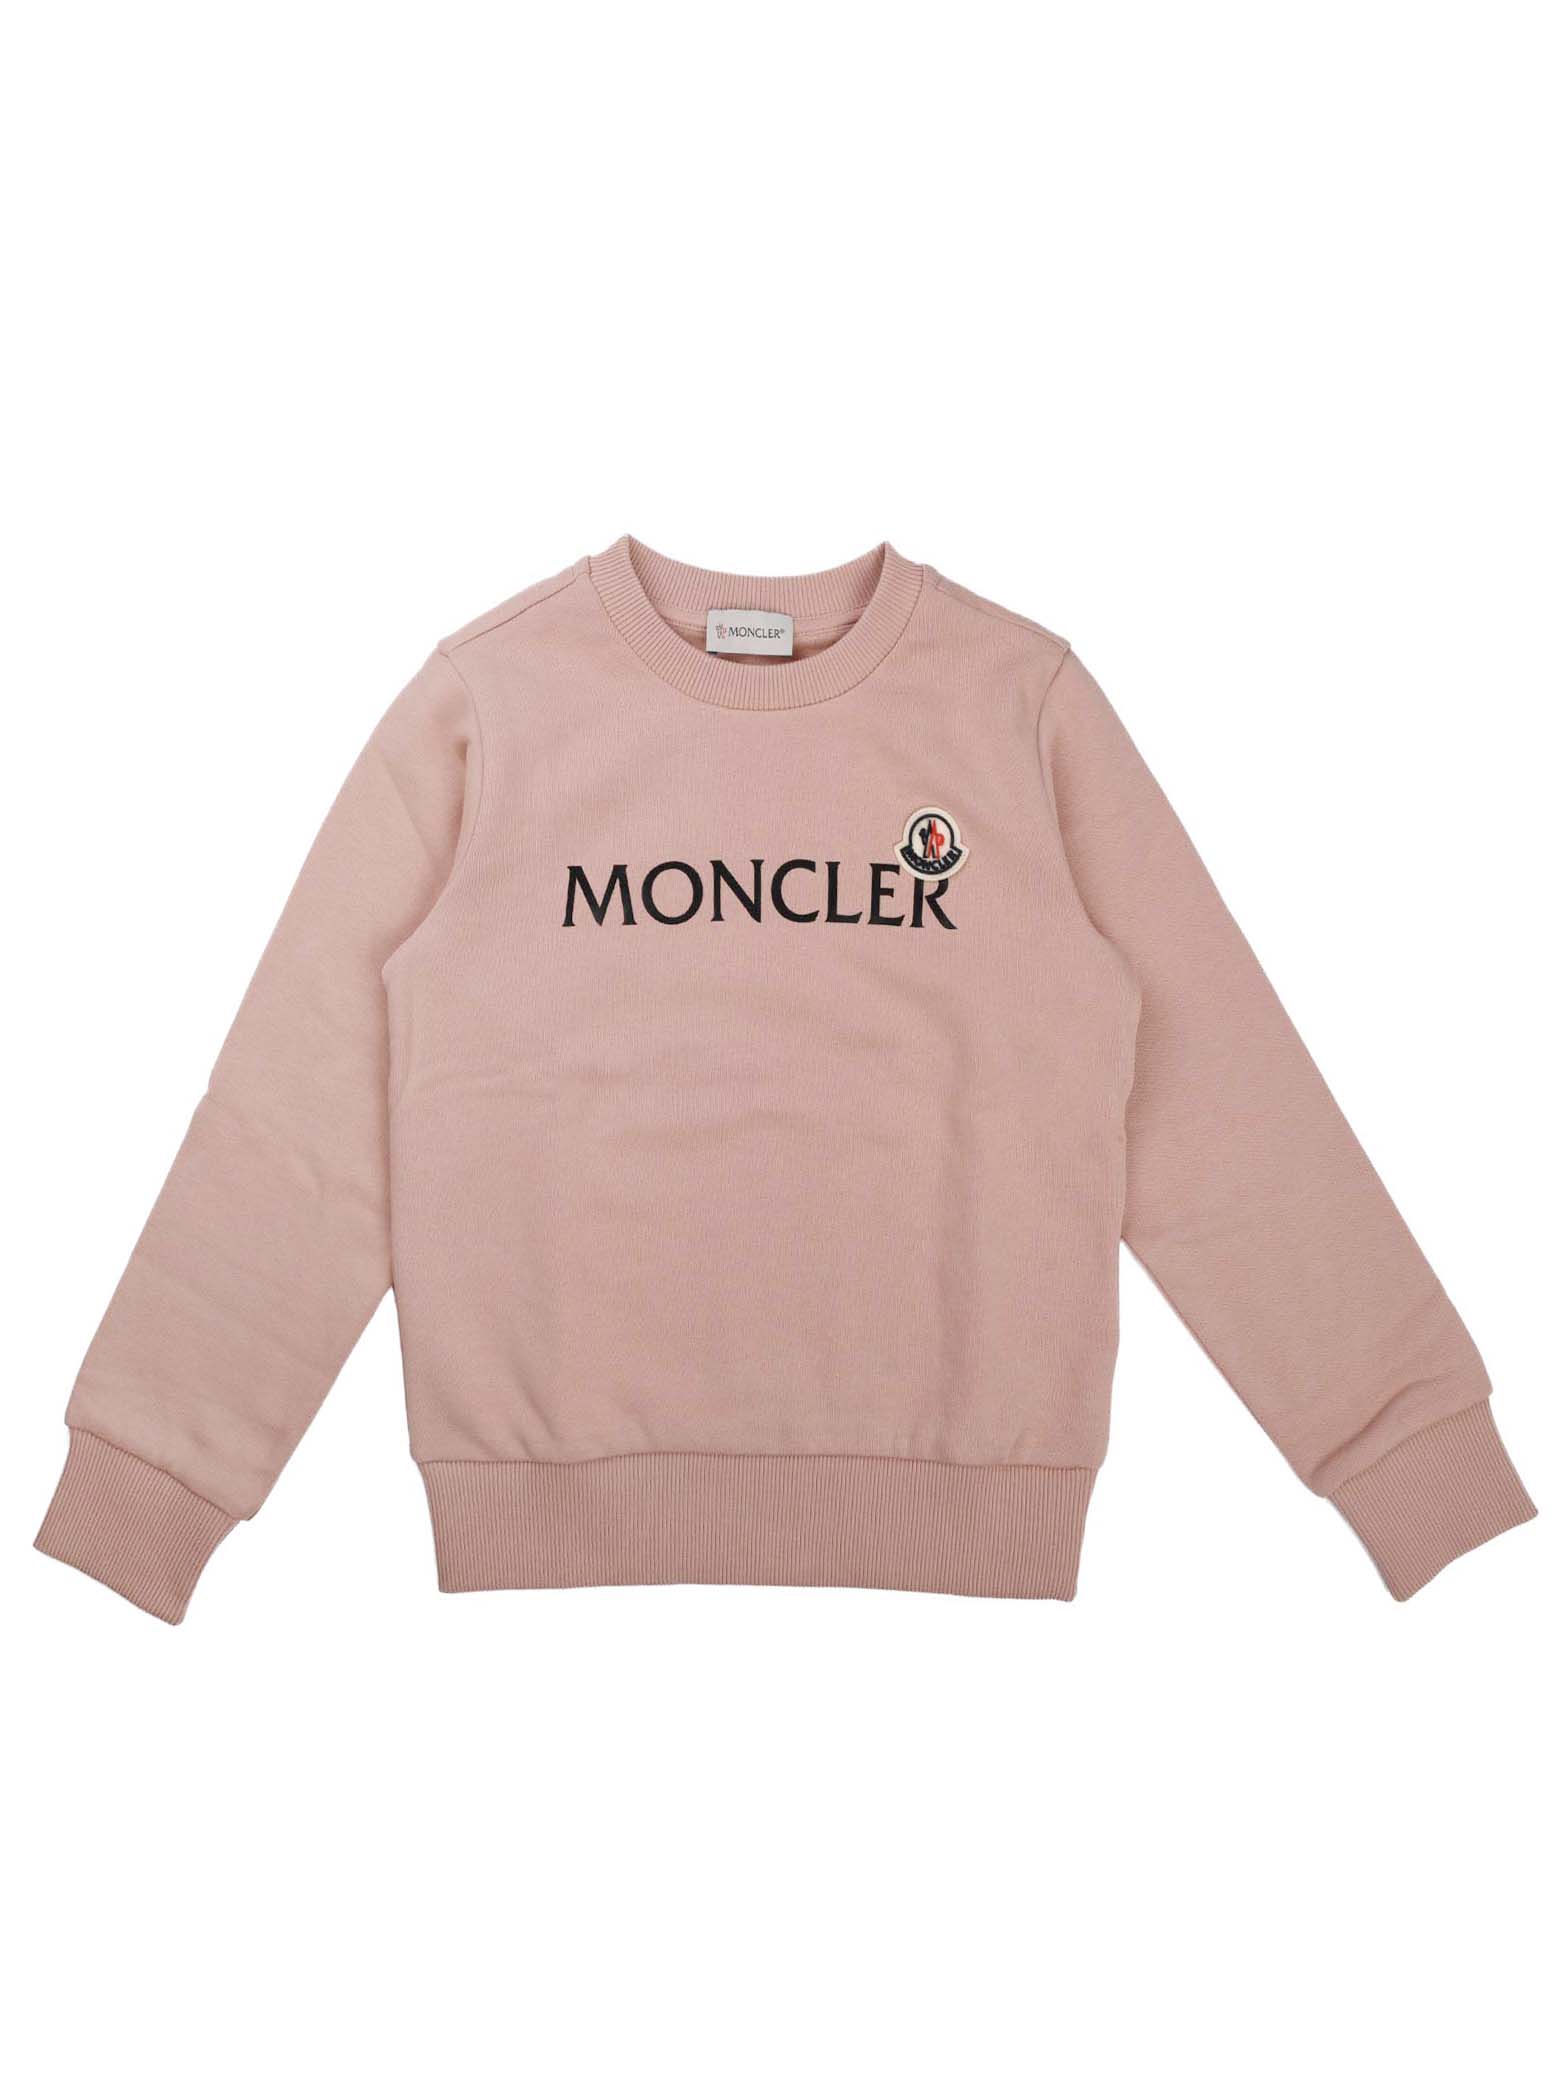 Moncler Antique Pink Crew Neck Sweatshirt